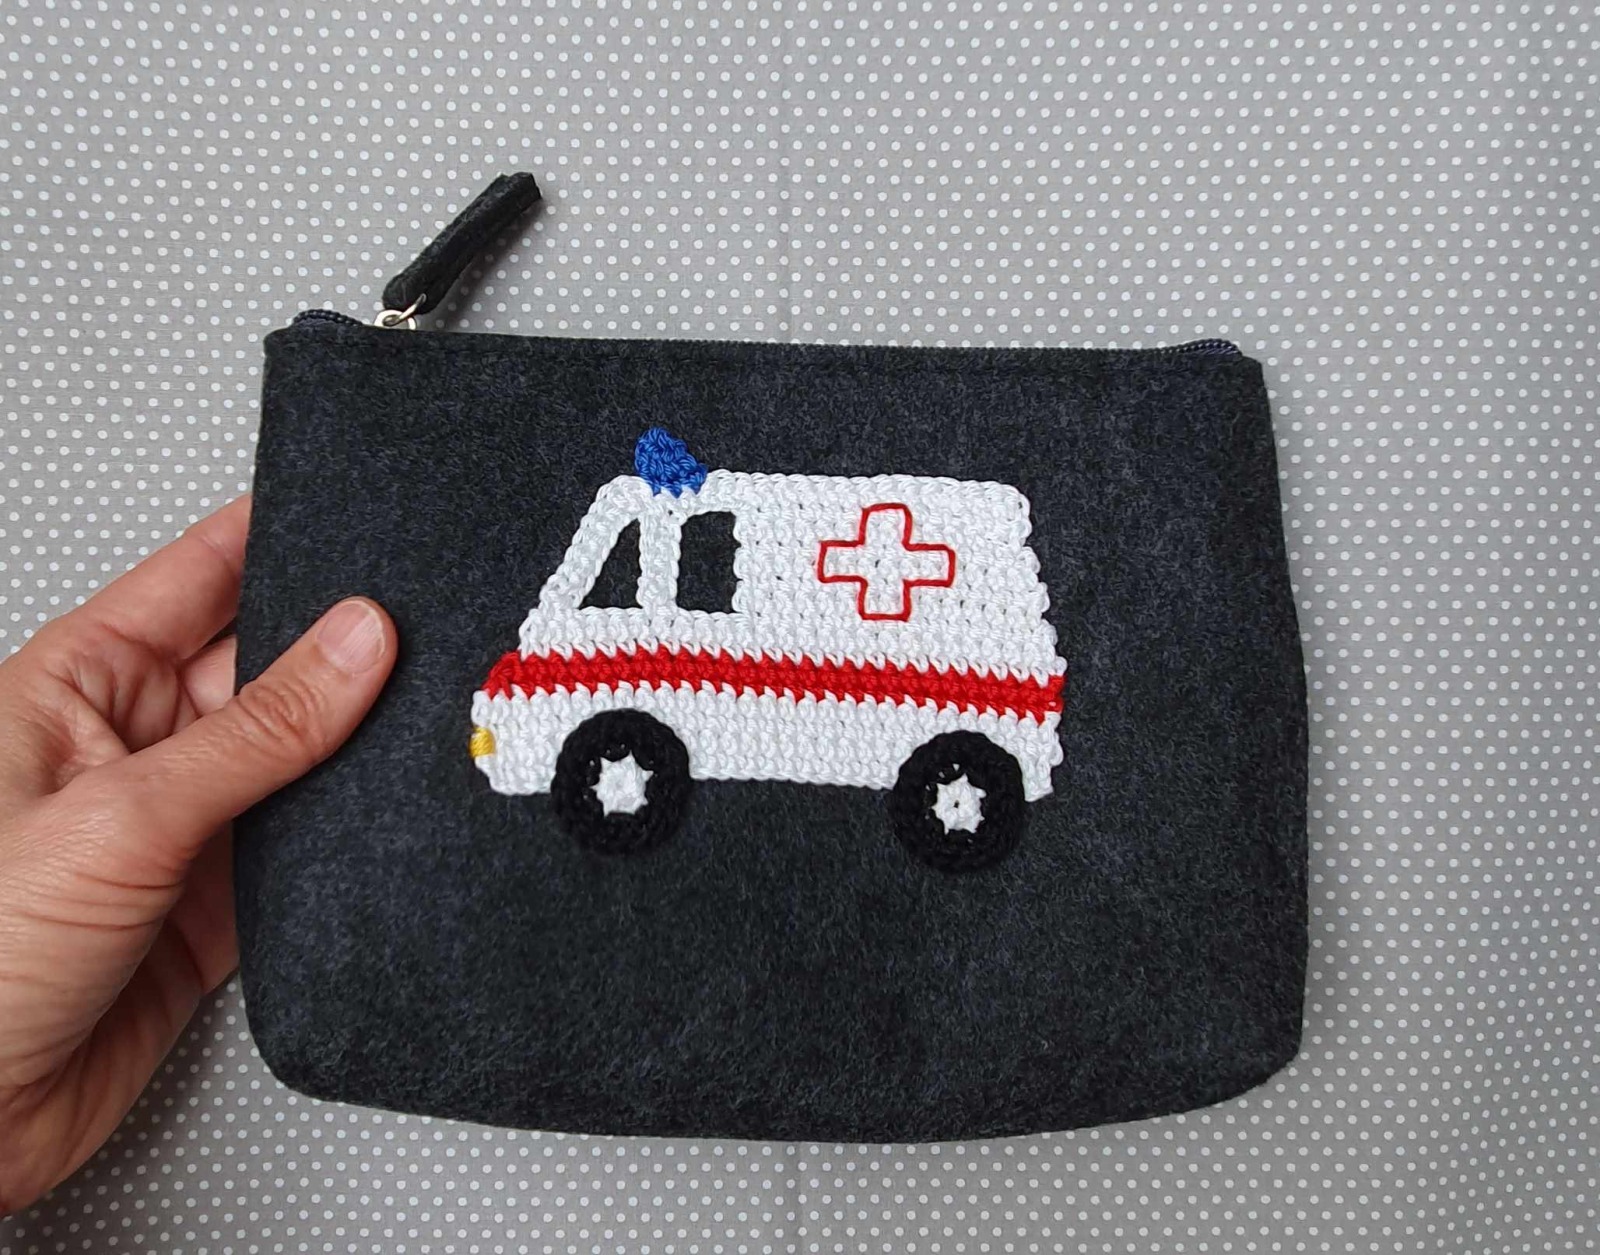 Erste Hilfe Tasche mit Krankenwagen Applikation 3